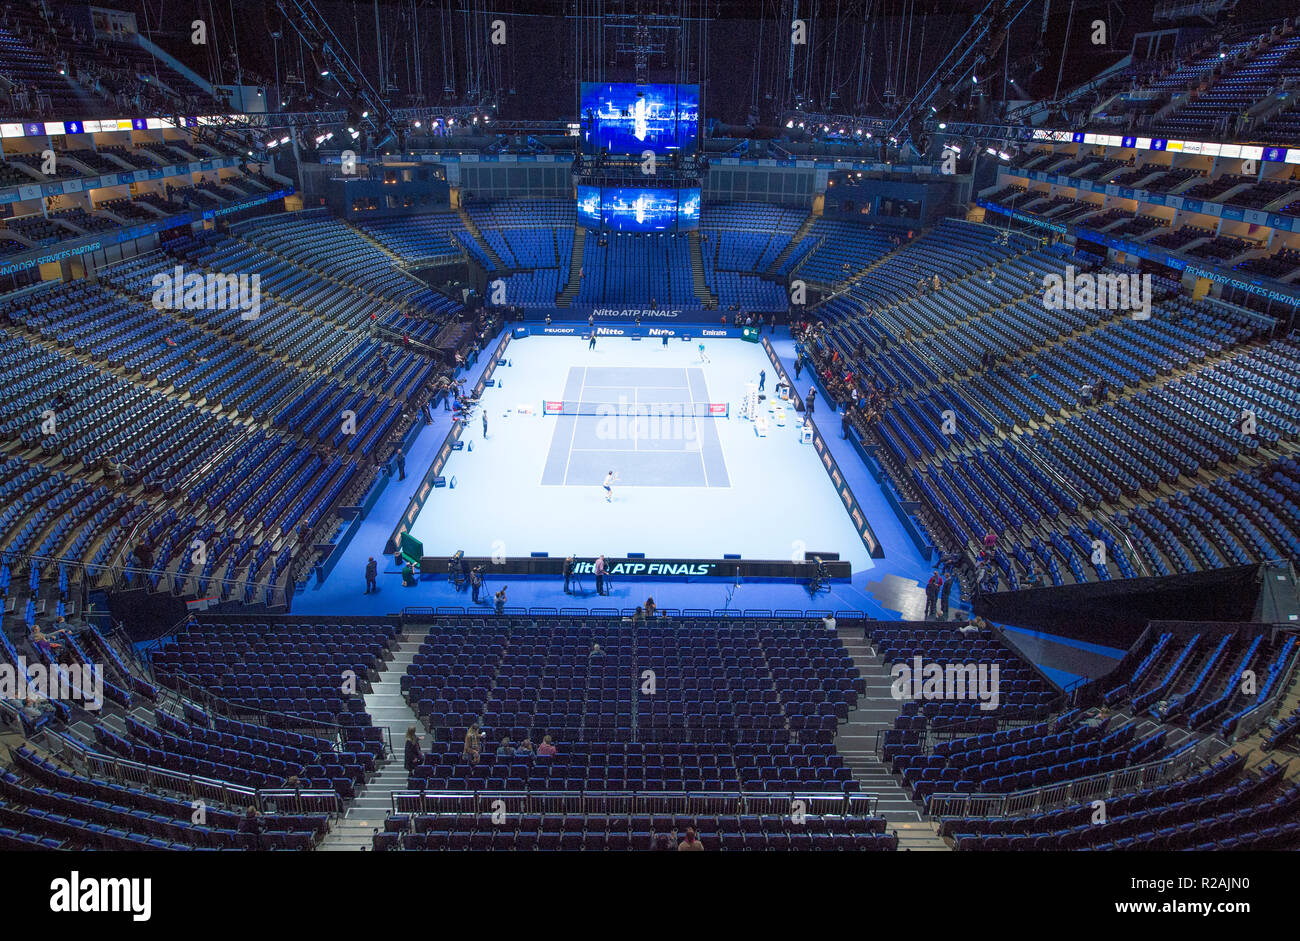 O2 Arena, London, UK. 18 novembre, 2018. Centre court à l'O2 se prépare  pour le jour des finales de l'ATP 2018. Finale Nitto Alexander Zverev  (GER), classée 3 jouera numéro 1 mondial